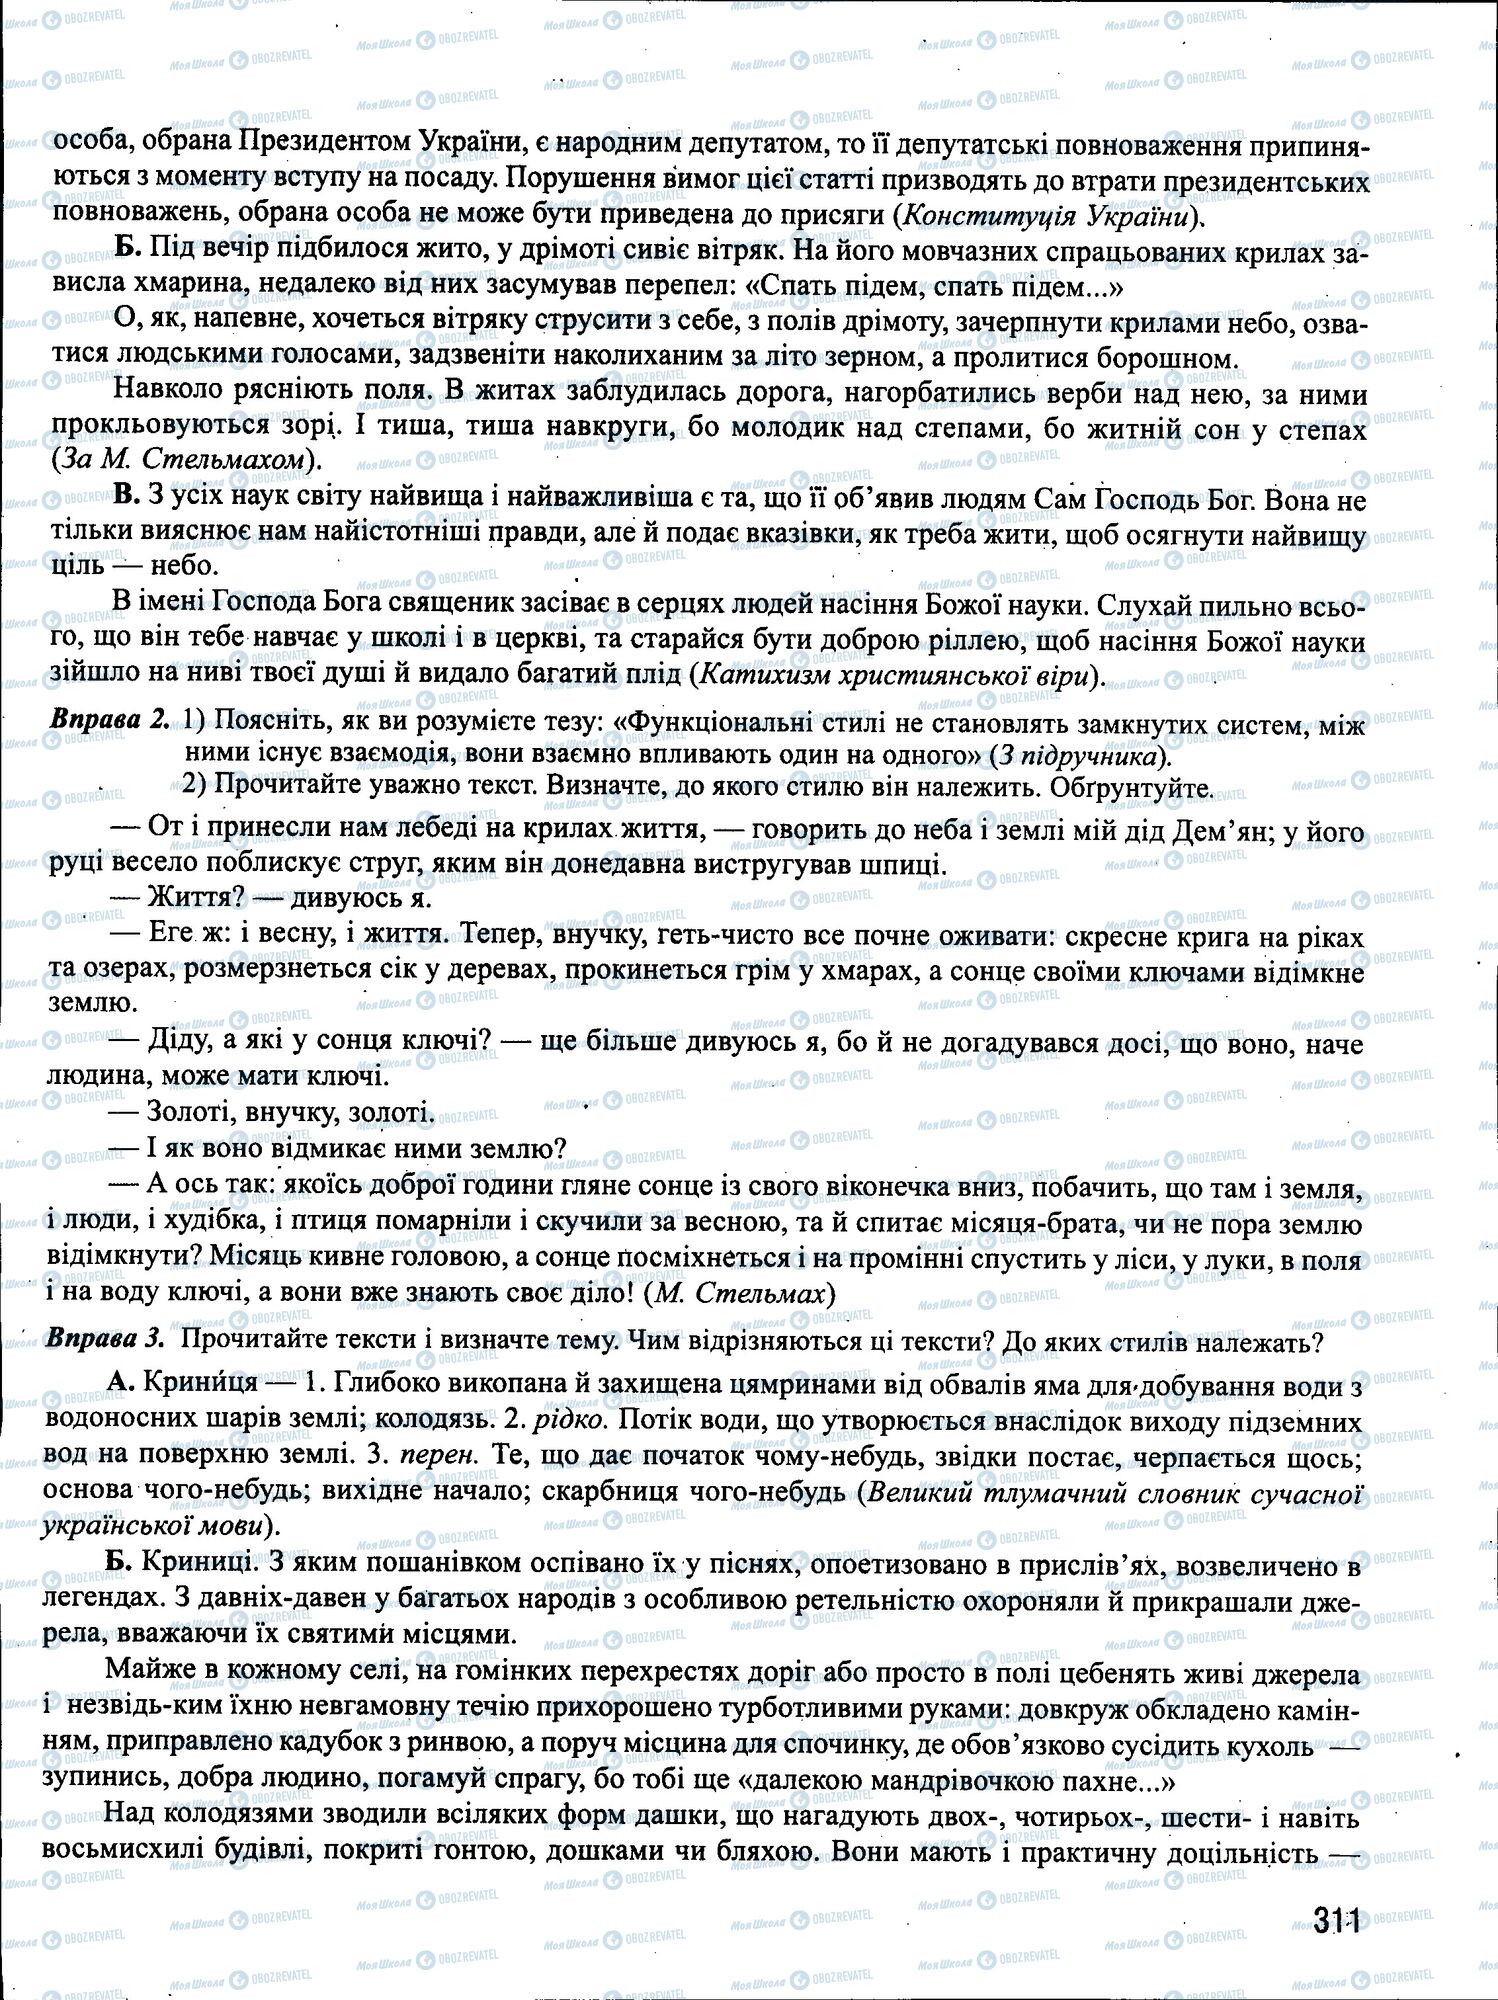 ЗНО Укр мова 11 класс страница 311